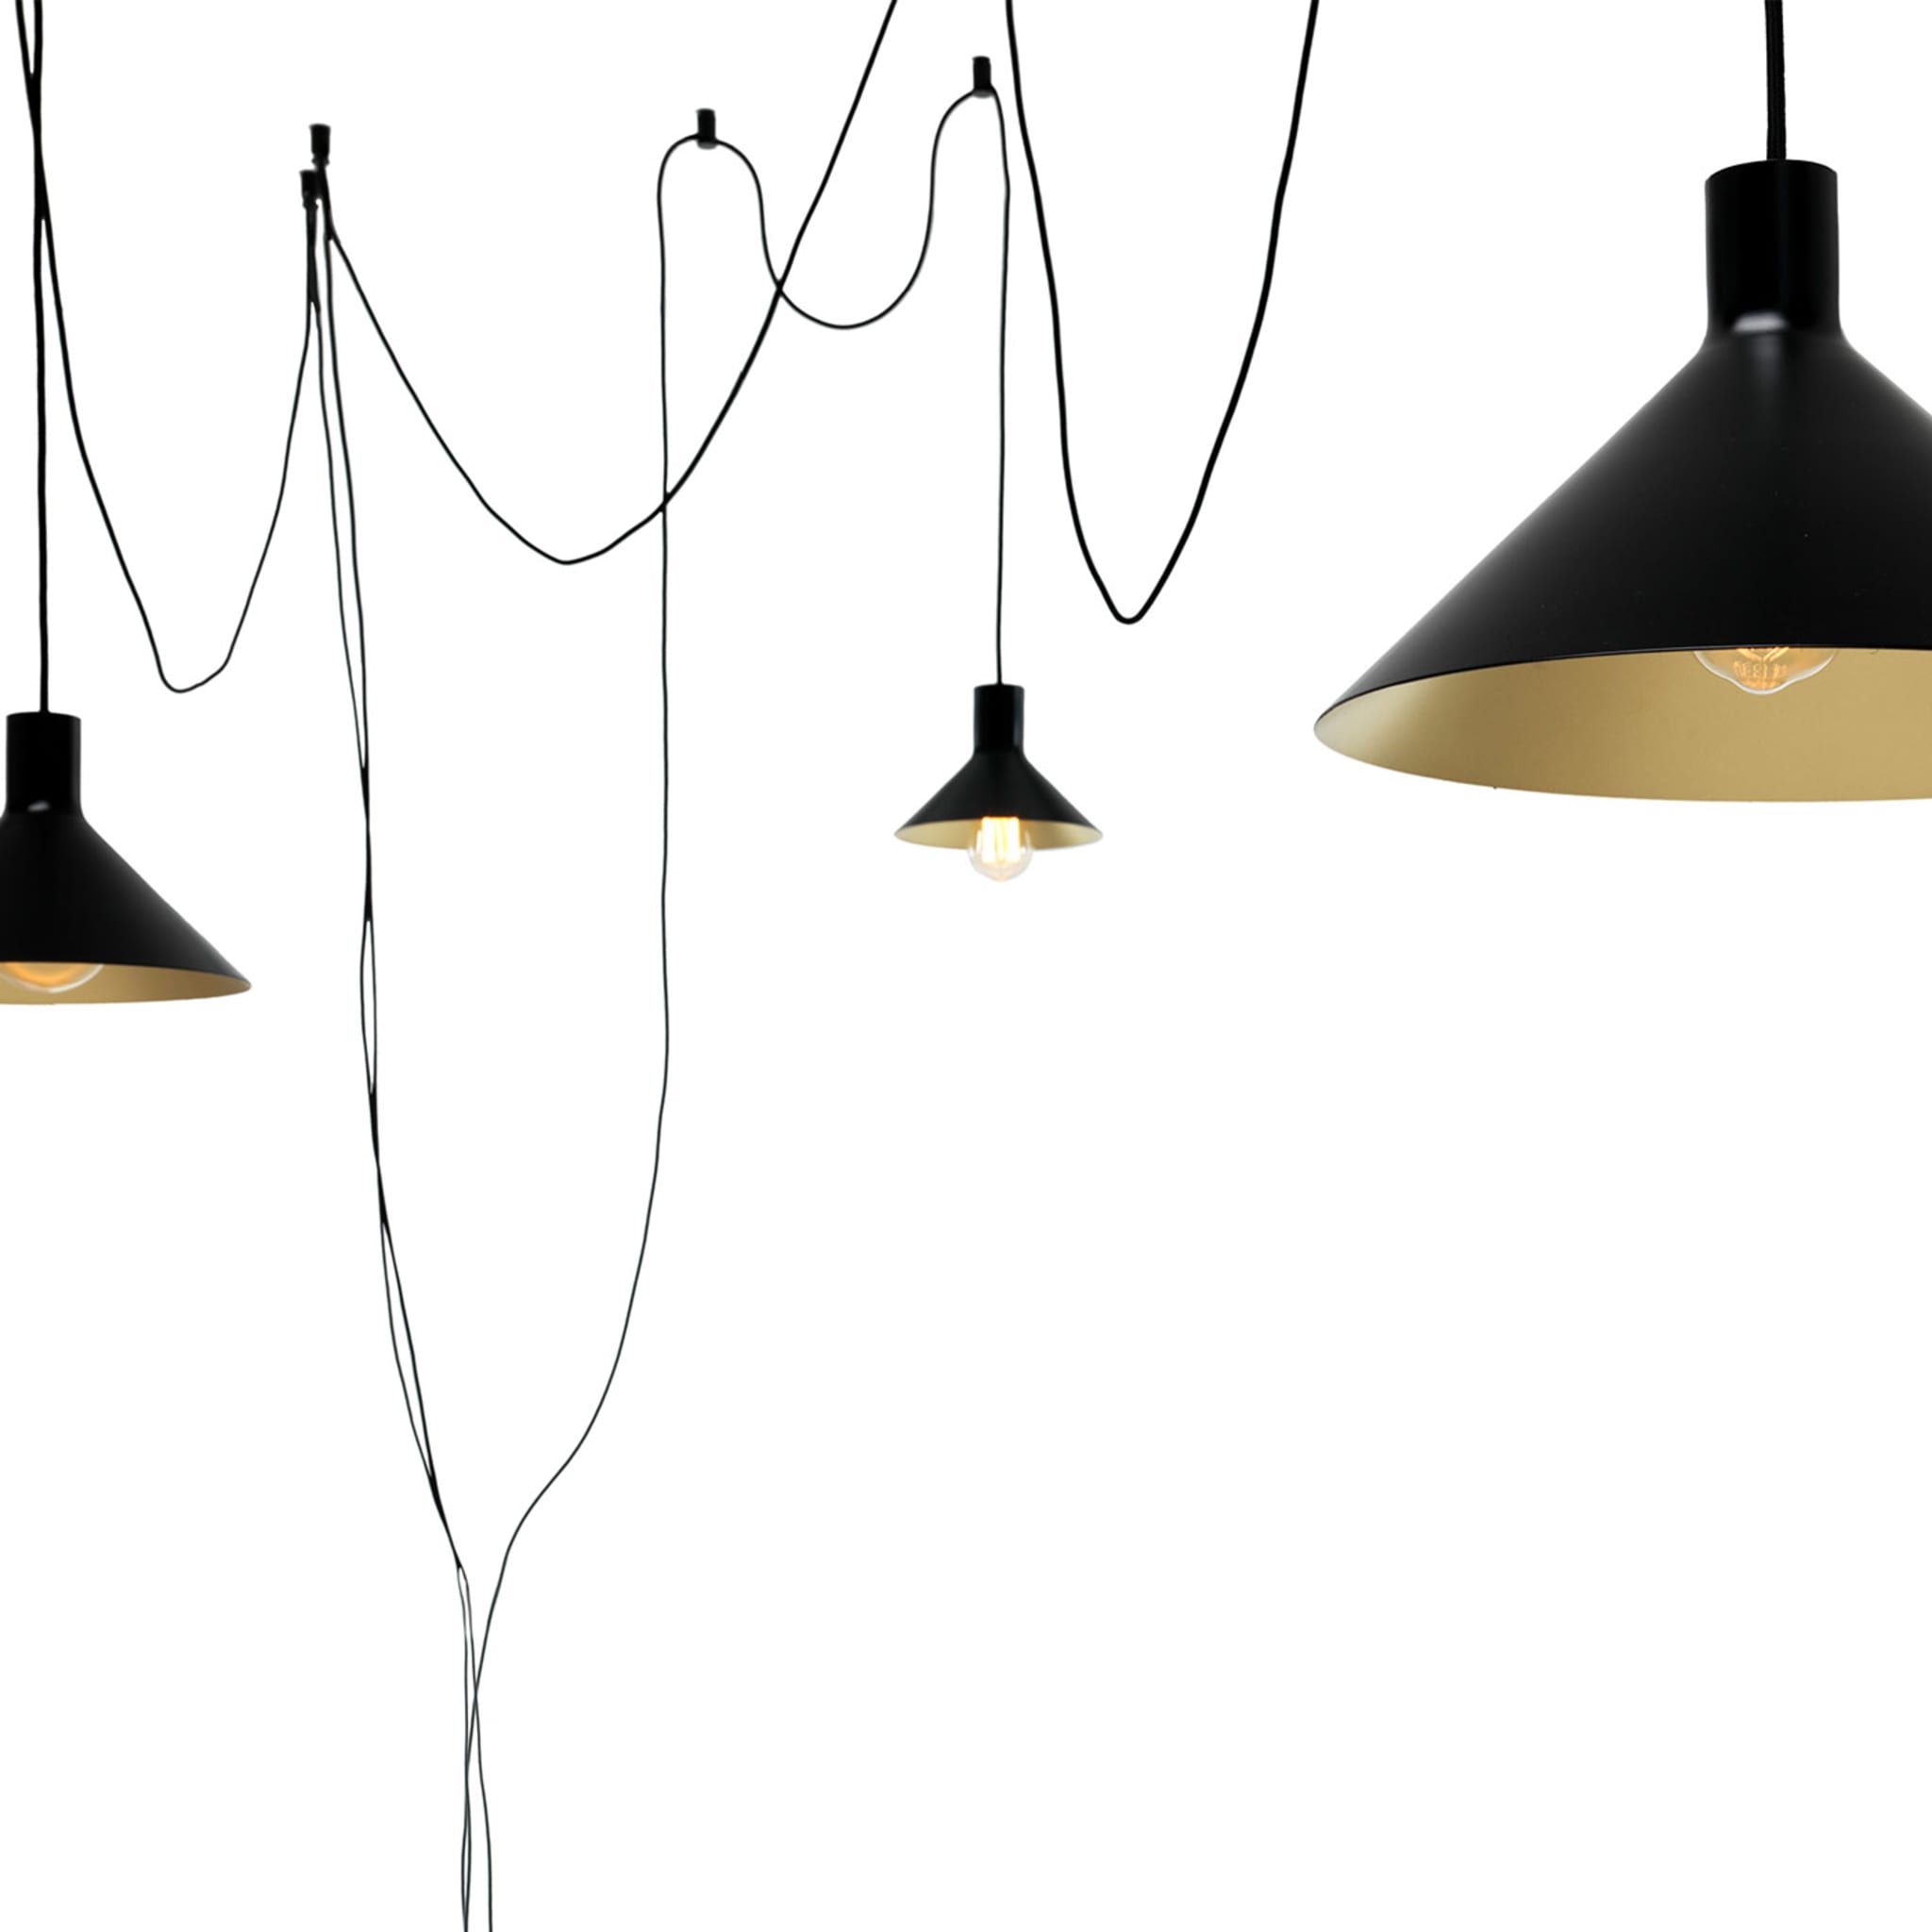 Cerberina 3-Light Black Floor Lamp by Filippo Mambretti - Alternative view 1